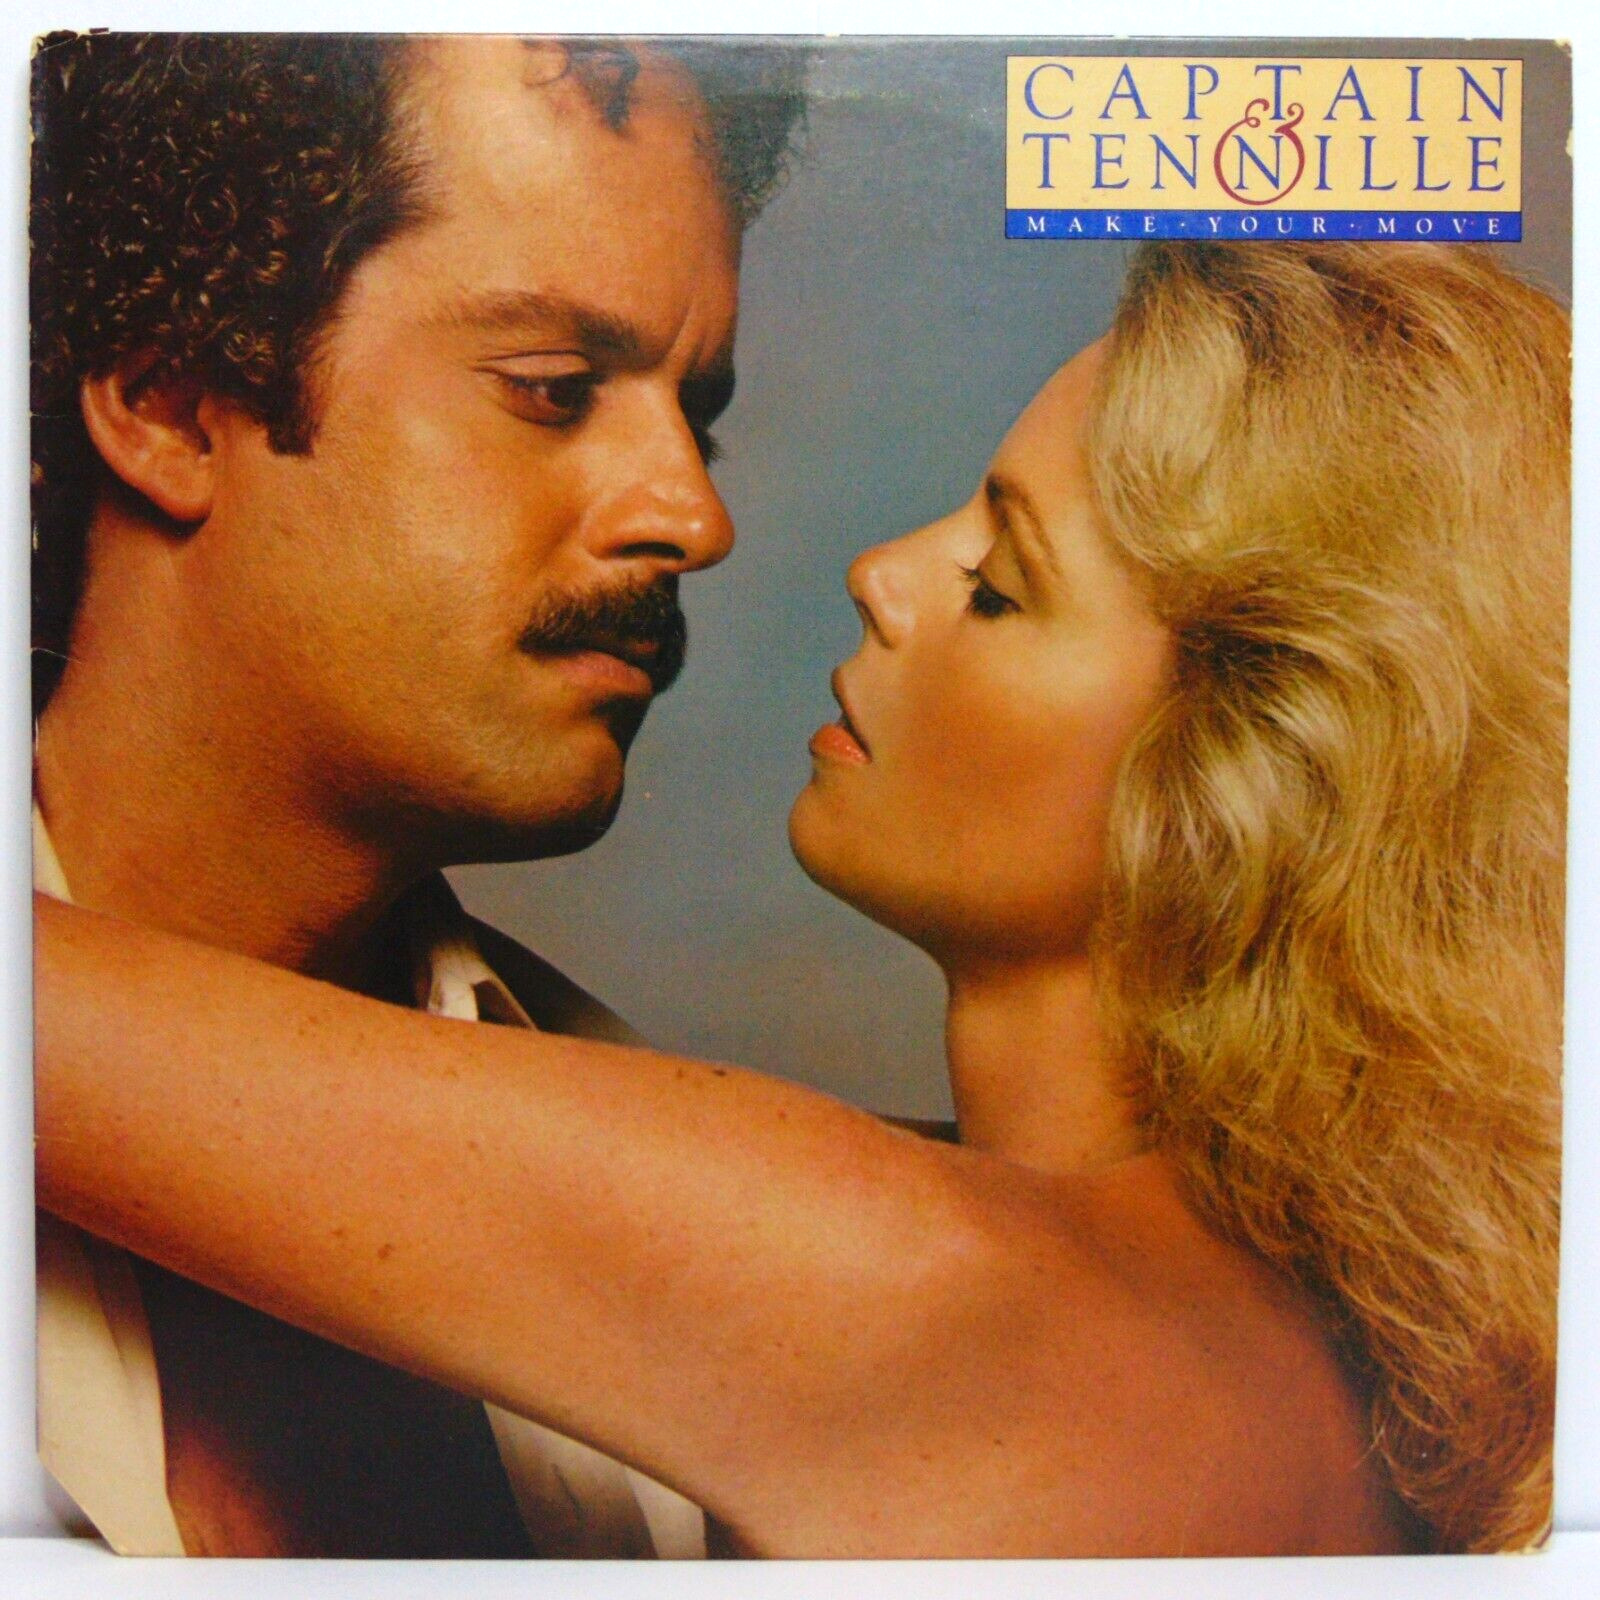 Captain &Tennille – Make Your Move - 1979 Casablanca Vinyl LP VG+ 